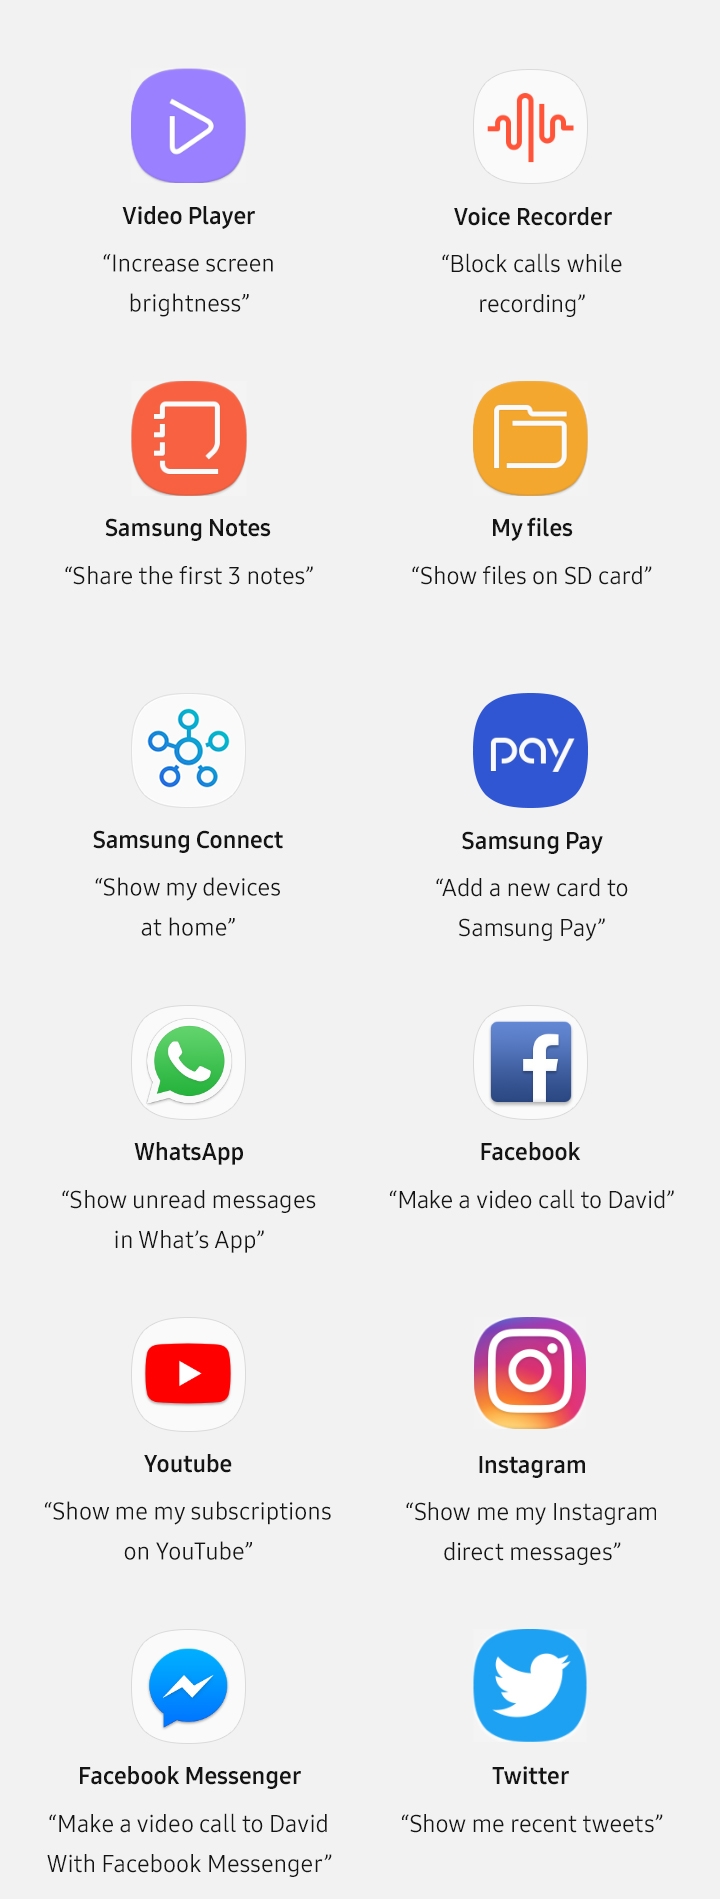 Sugestões para a melhoria da Bixby - Samsung Members